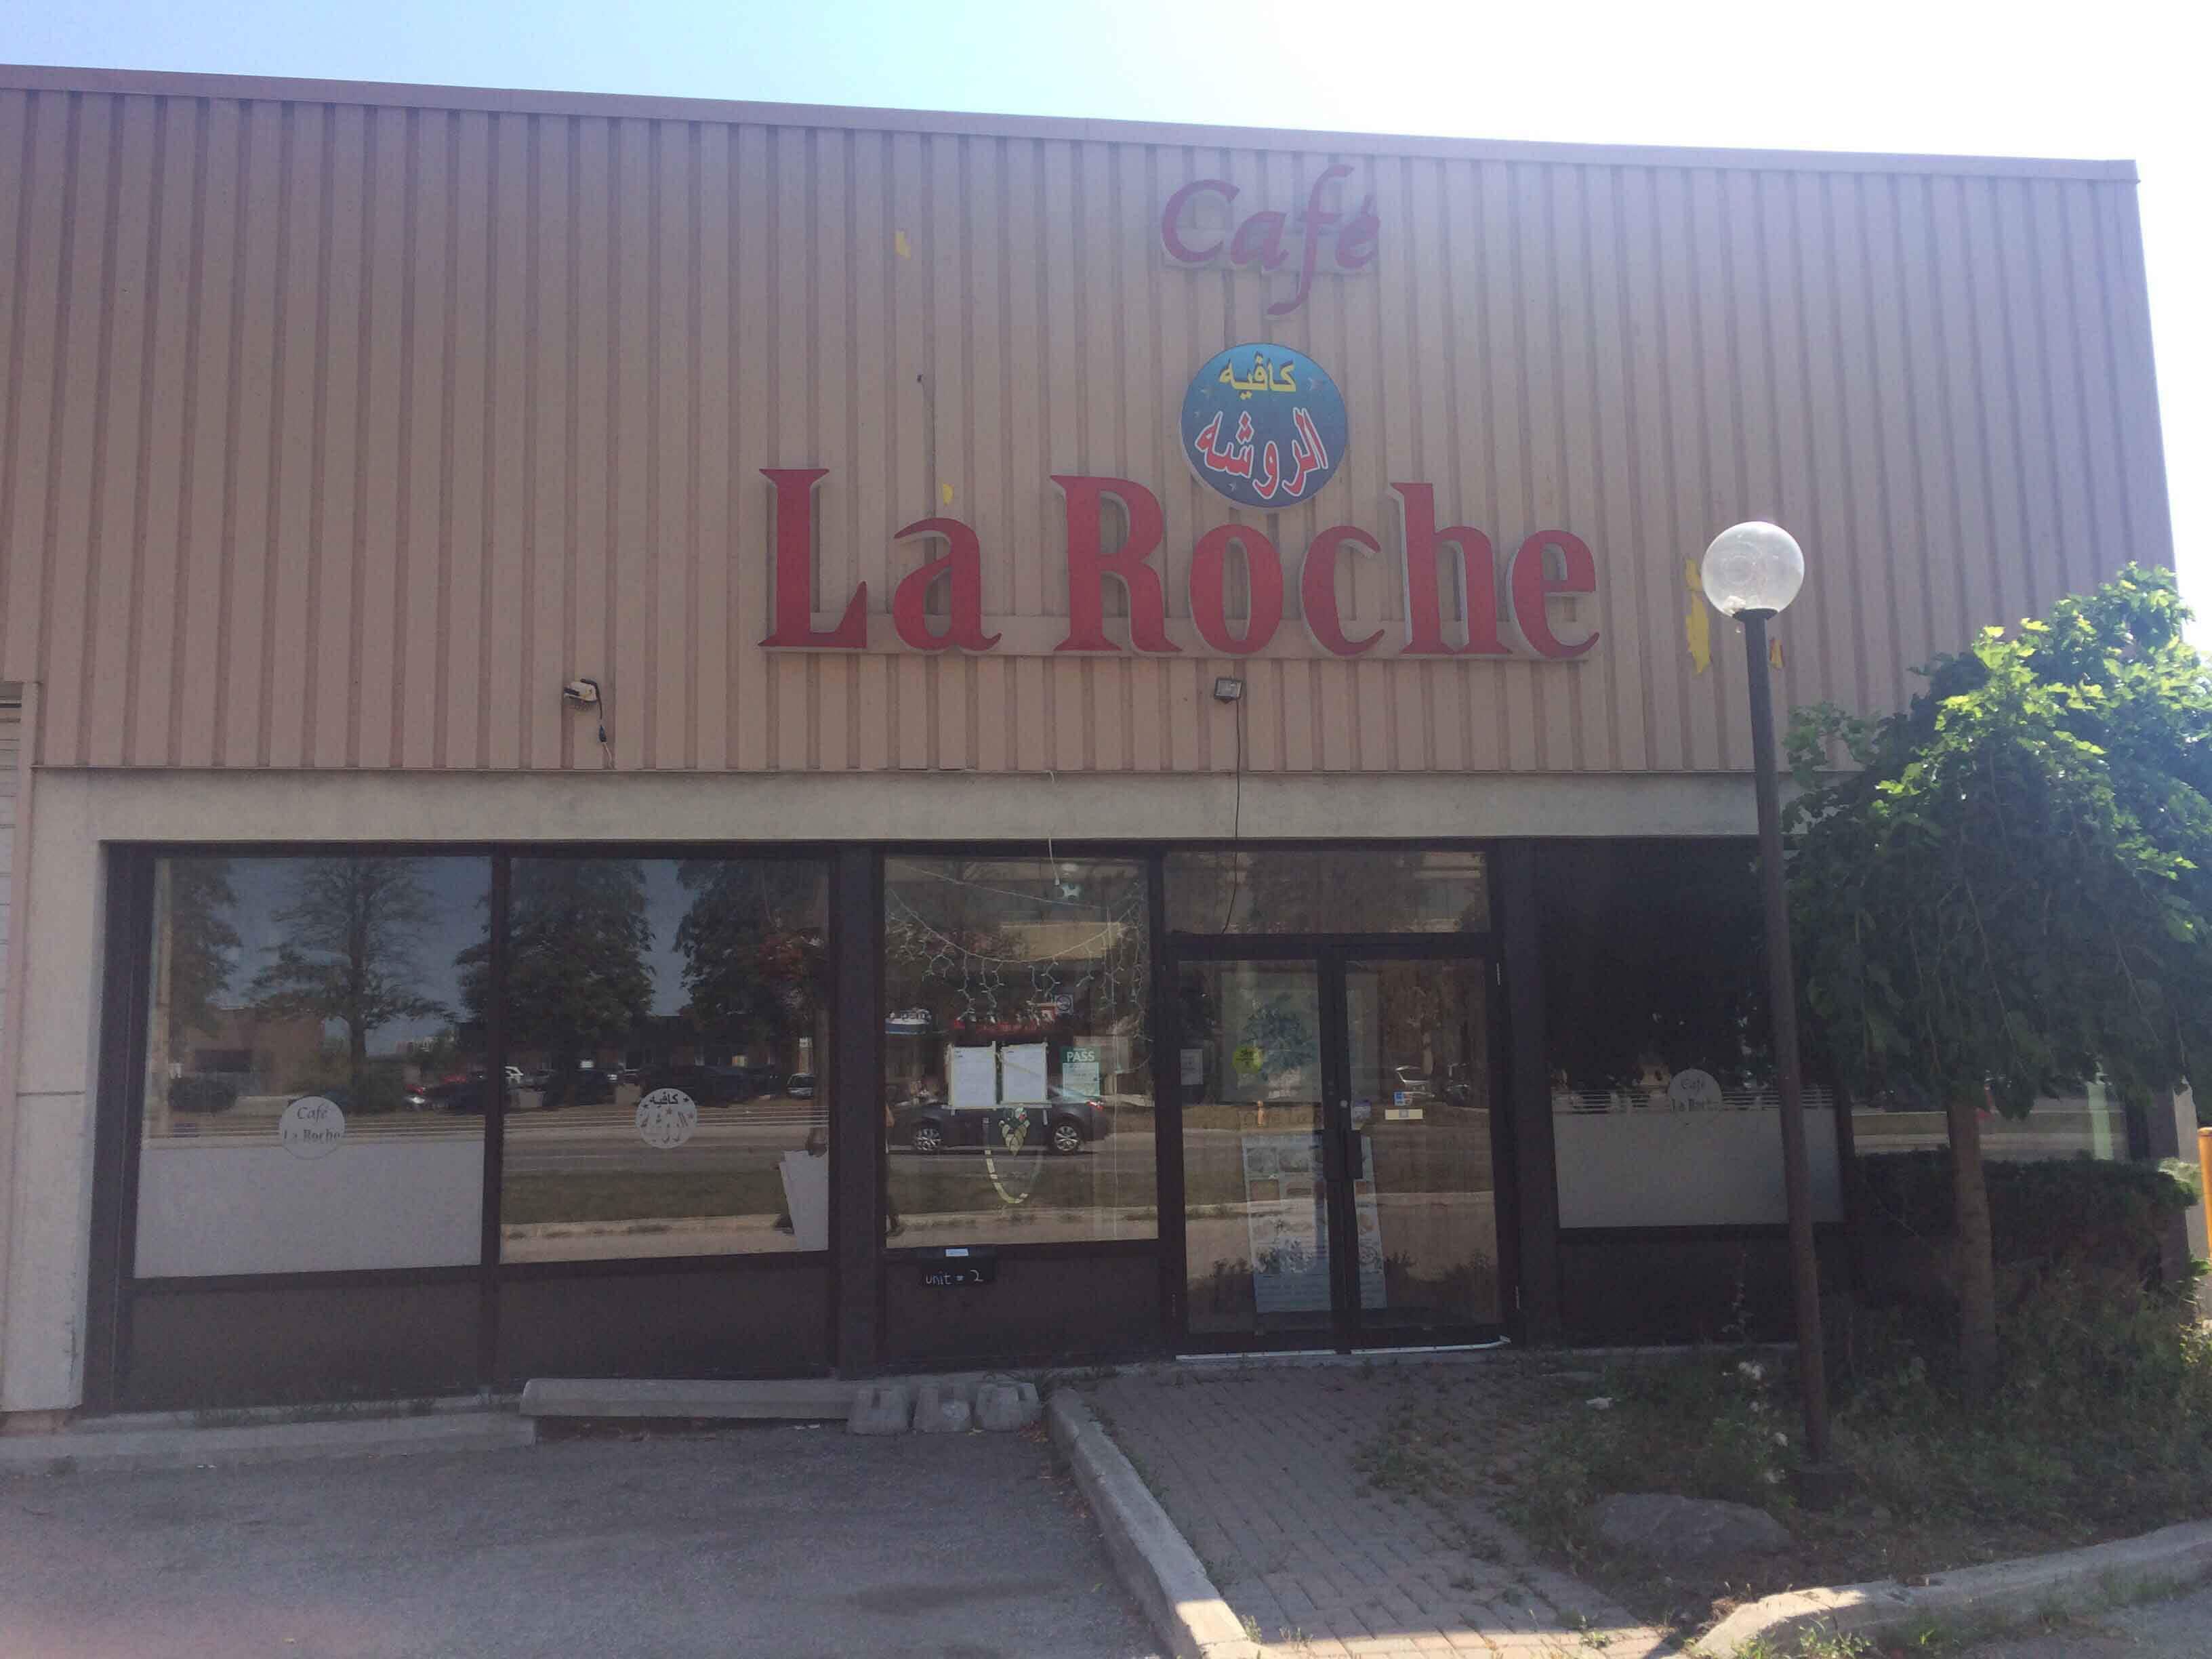 Cafe La Roche